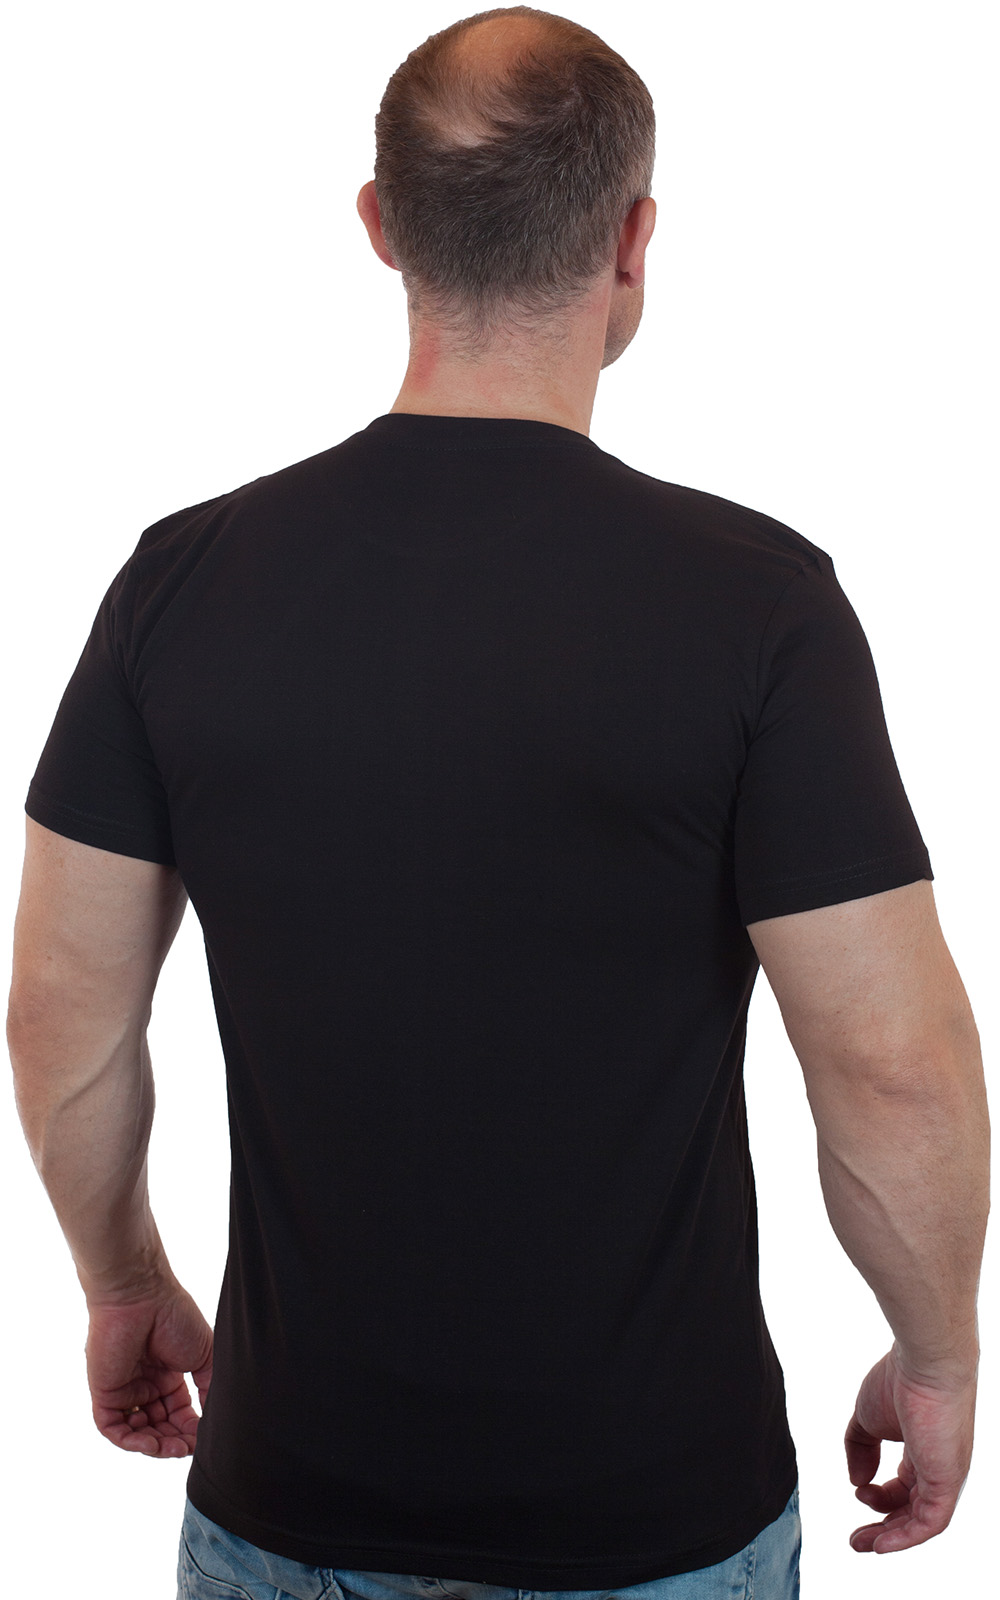 Черная однотонная футболка для мужчины – классика жанра всего за 499 р.